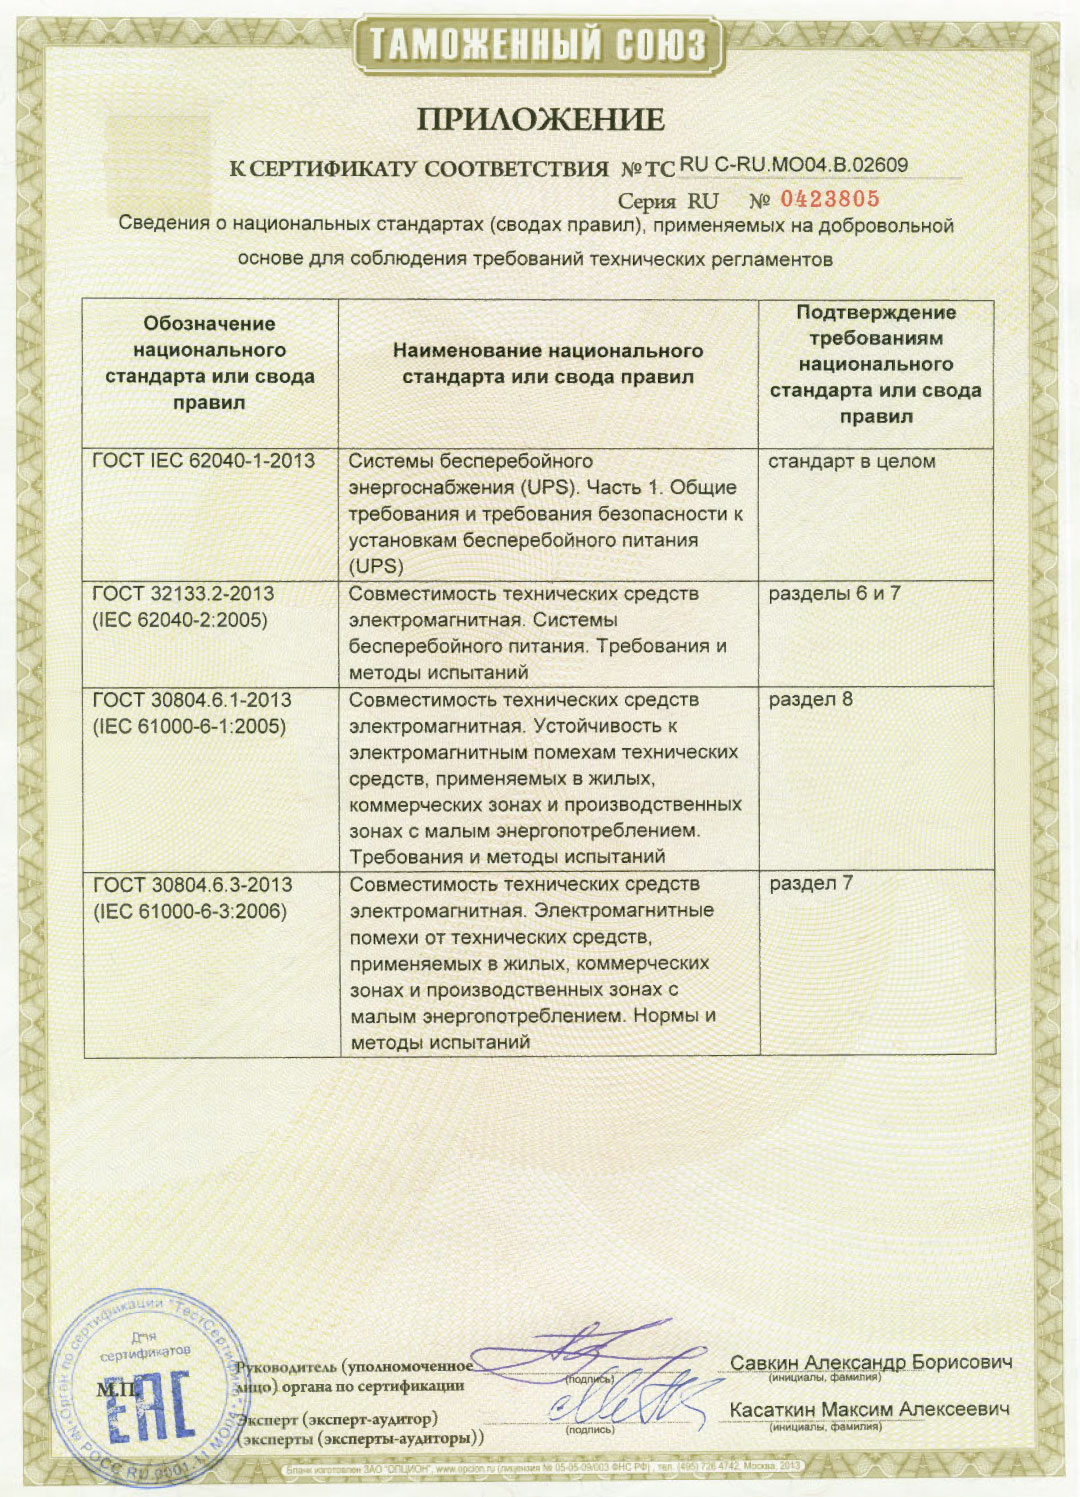 Сертификат соответствия Таможенного союза на БАП Приложение